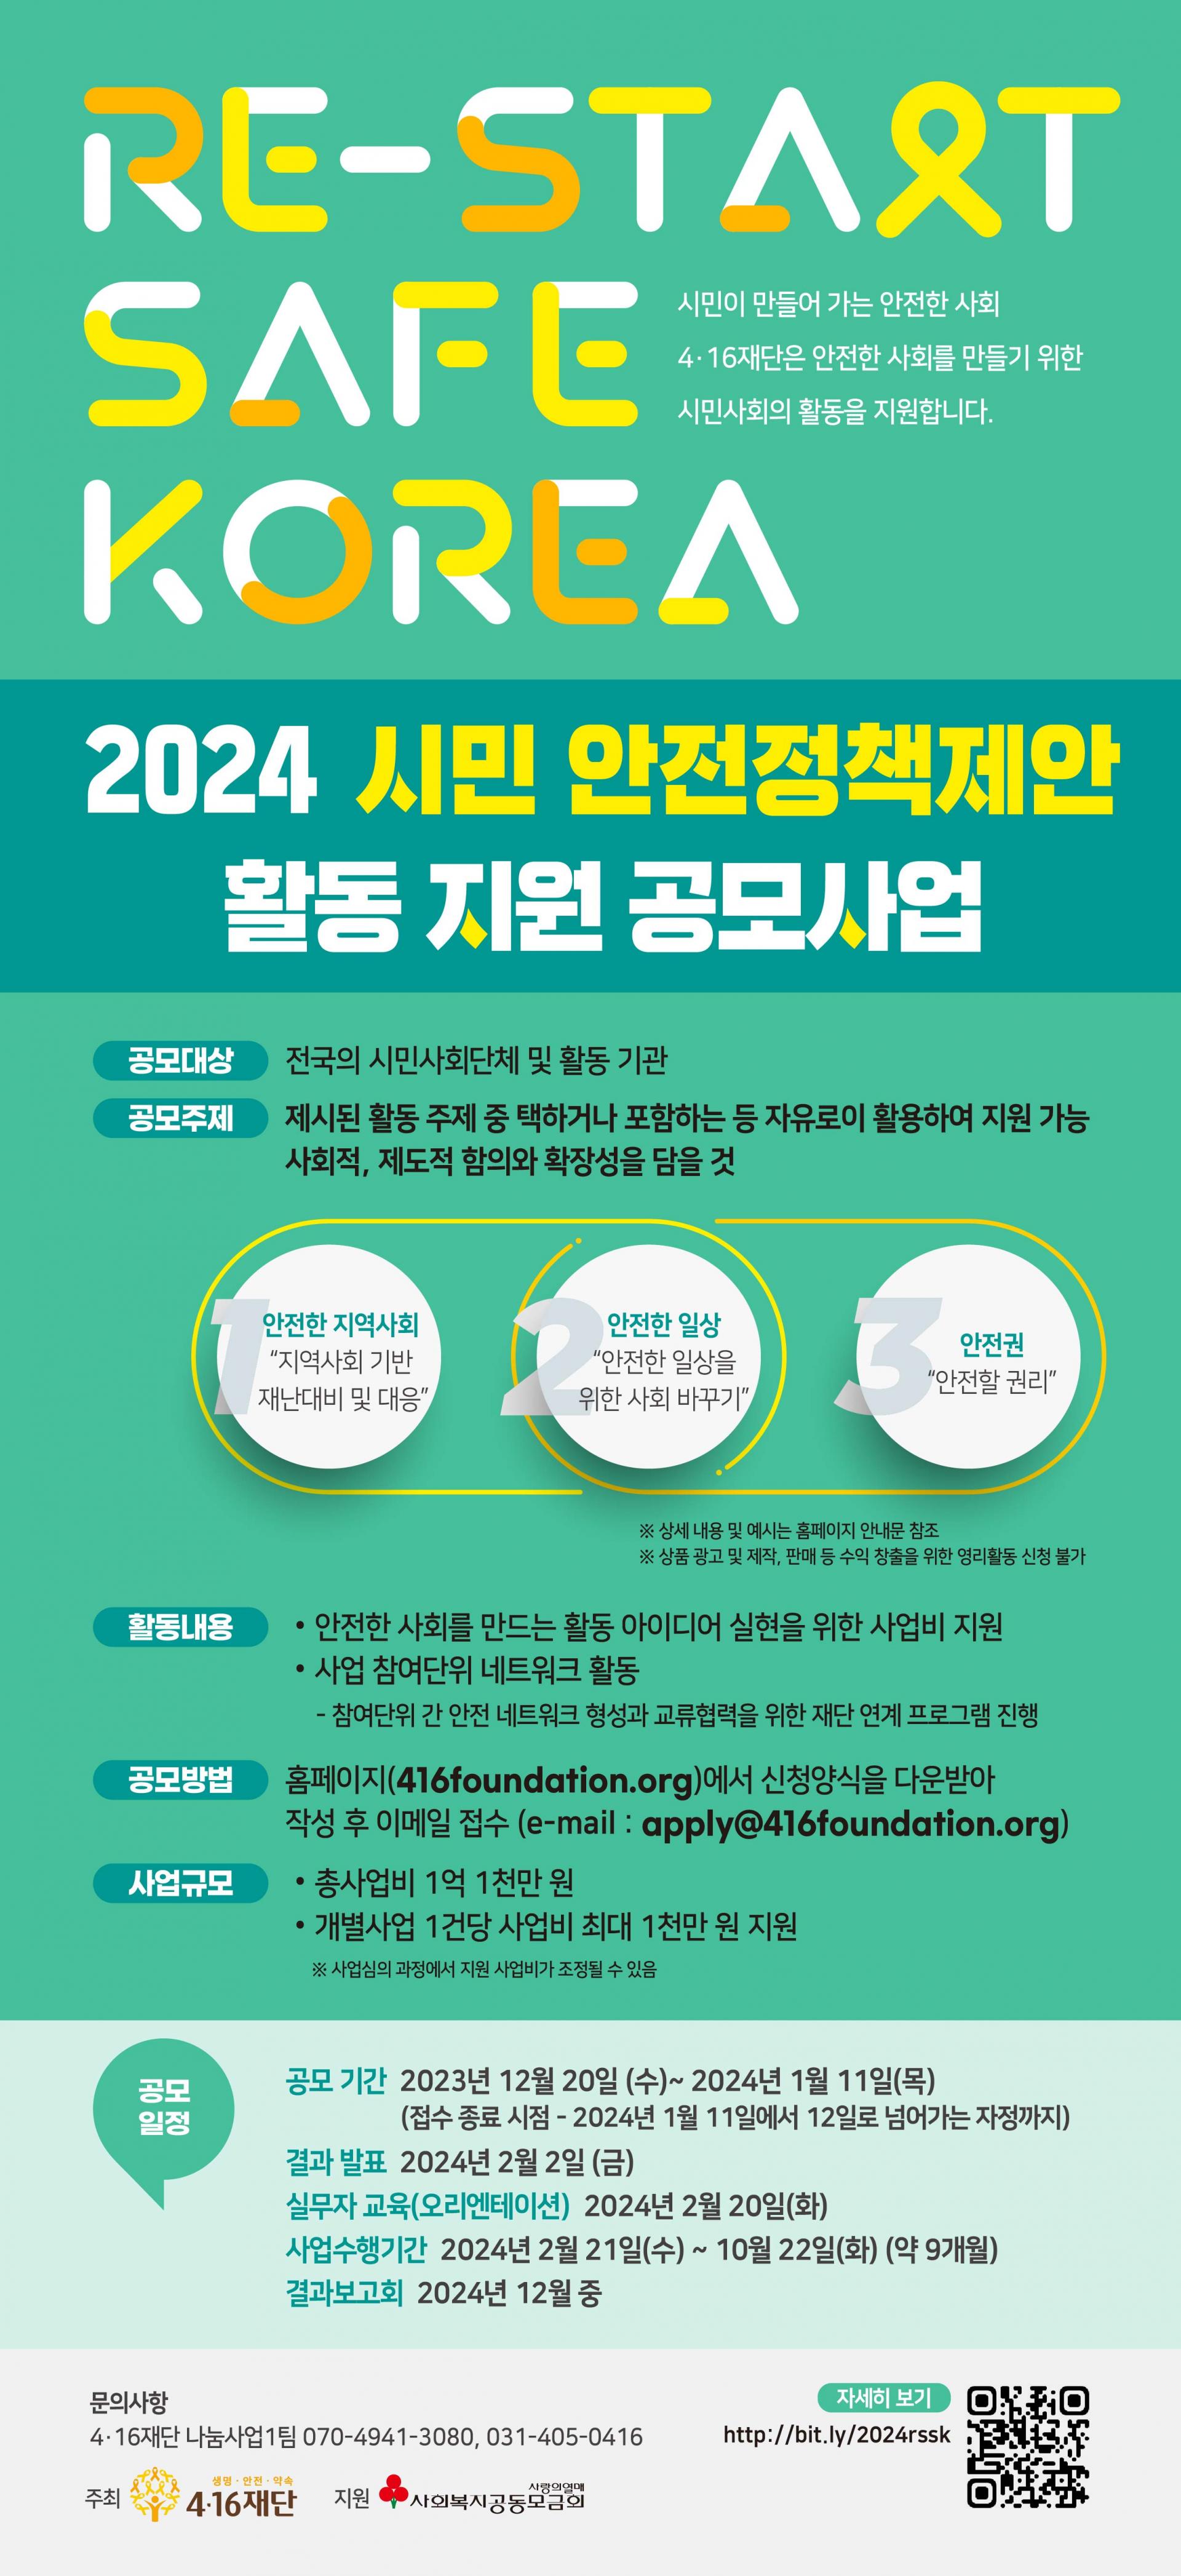 [전국] 4.16재단 RE-START SAFE KOREA 시민 안전정책제안 활동 지원 공모사업 (2024)